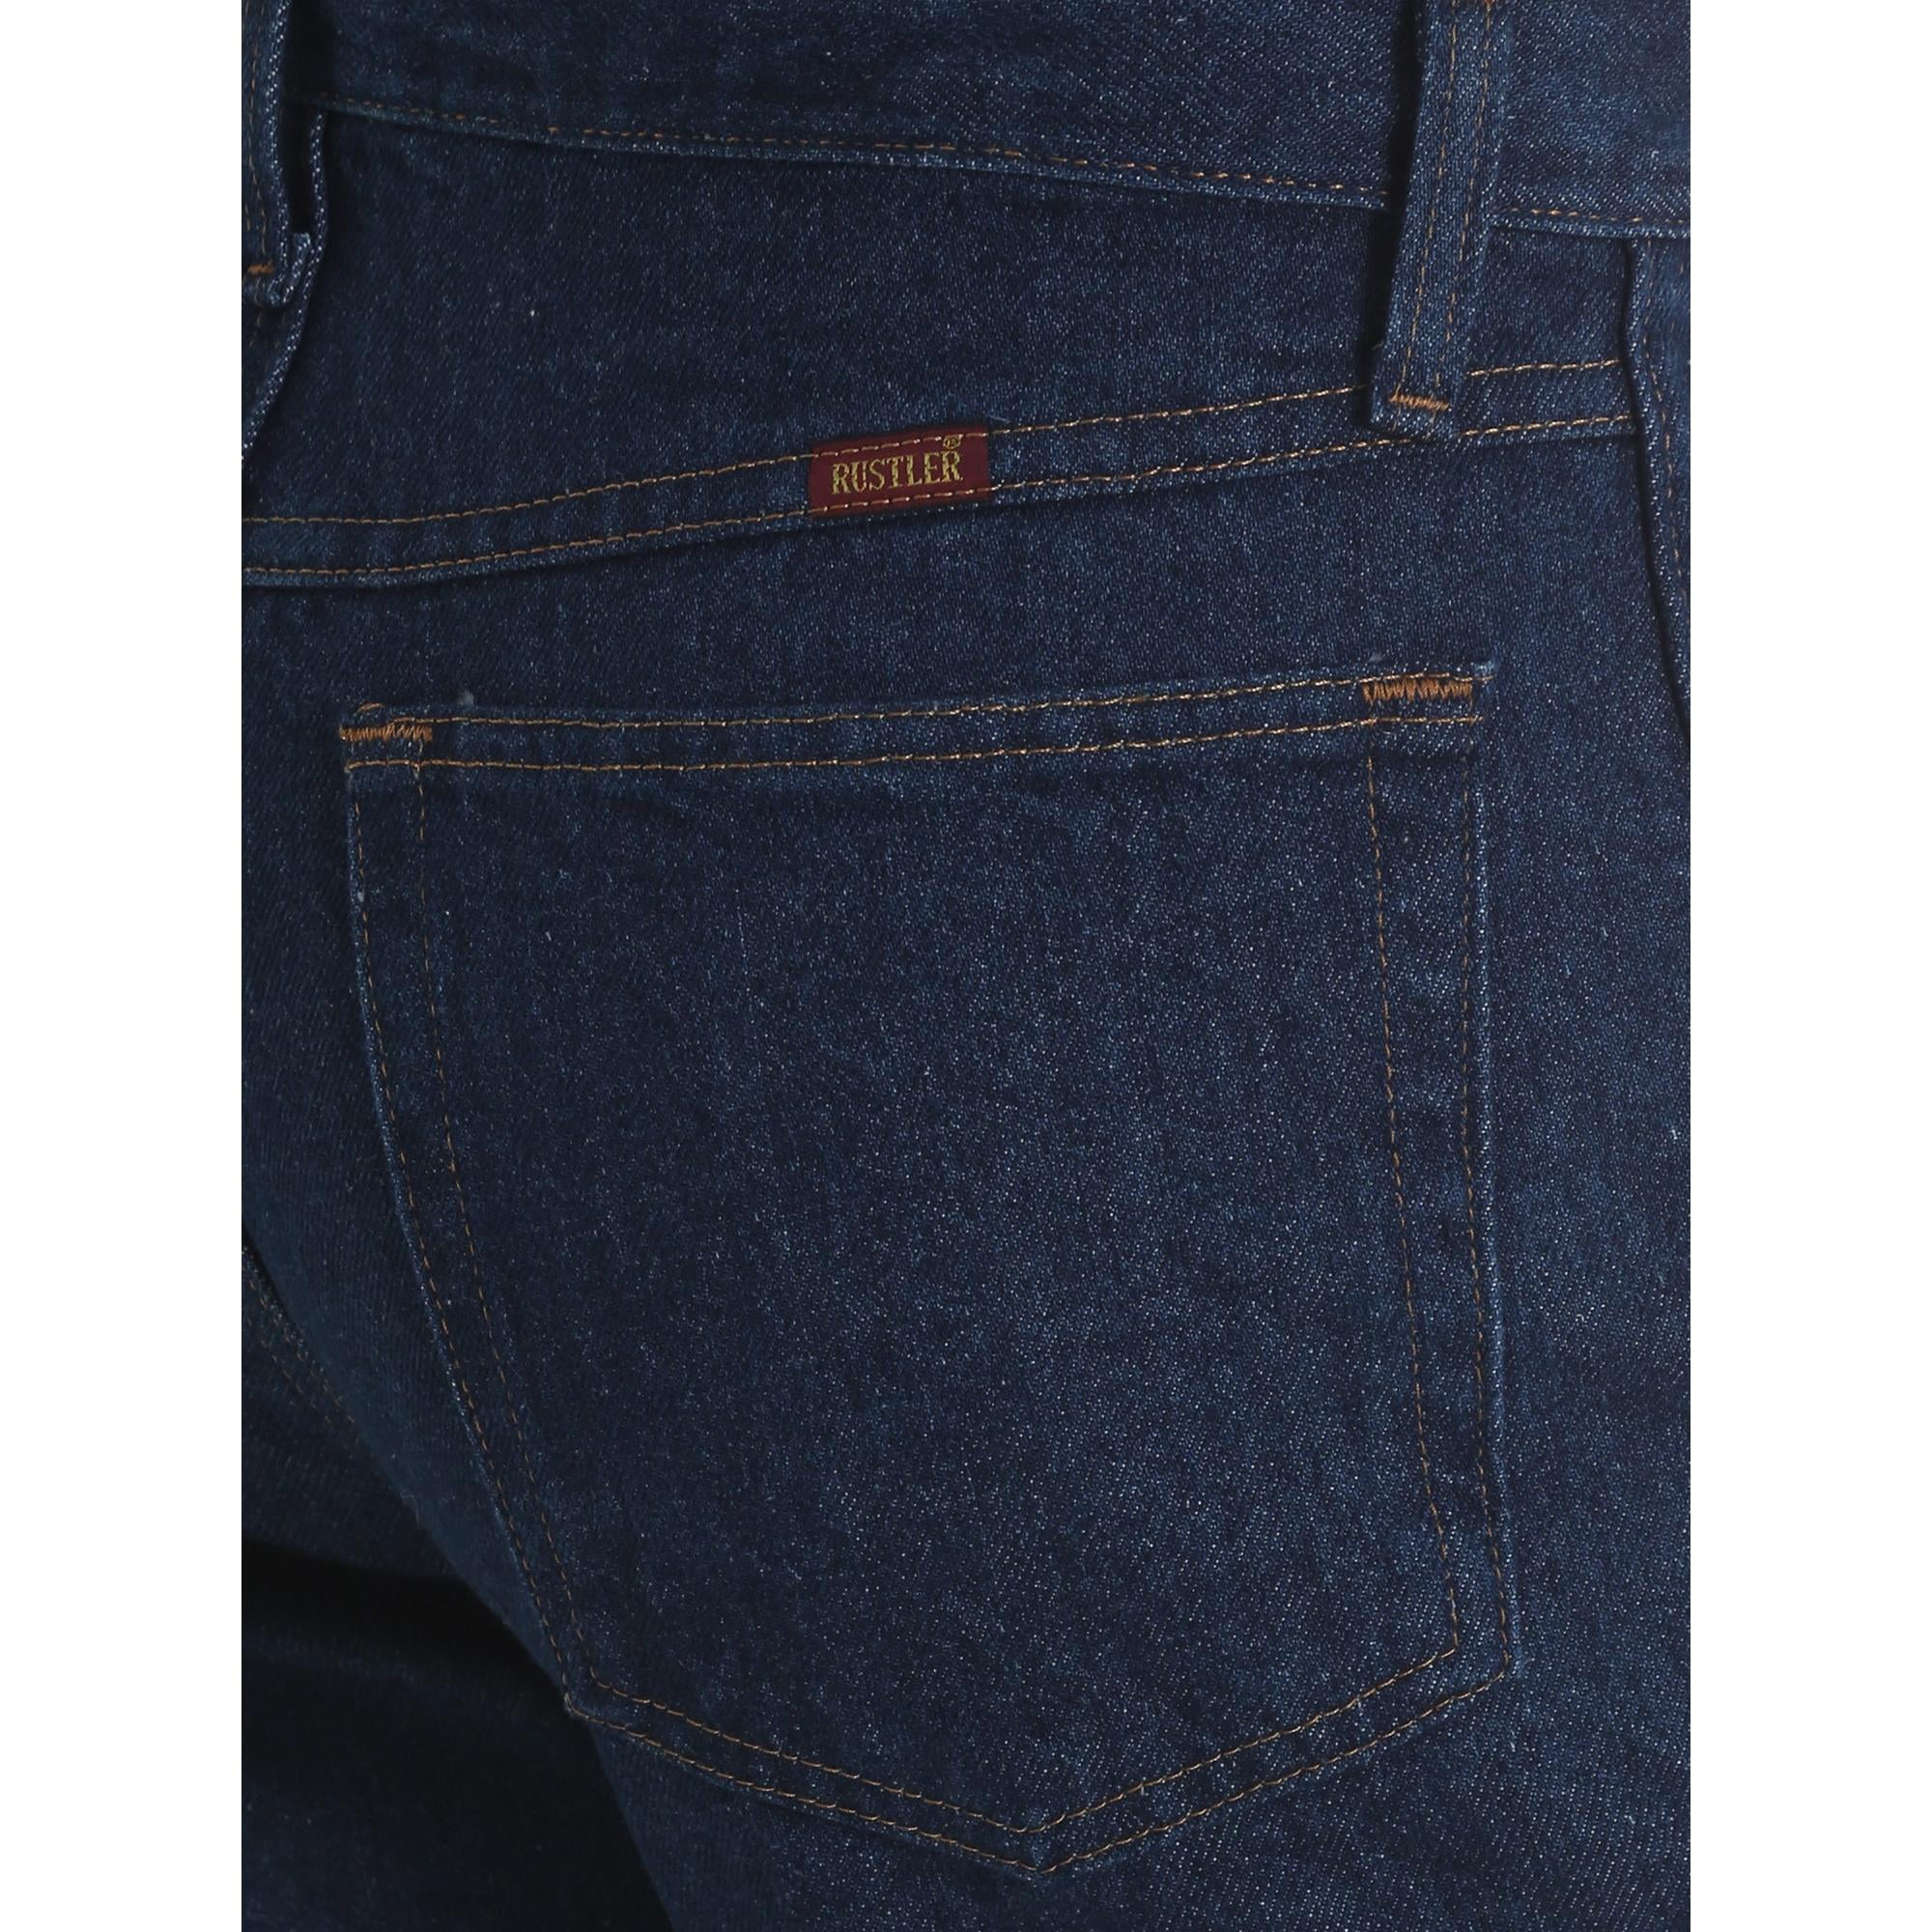 Buy Wrangler Rustler Men's and Big Men's Regular Fit Jeans Online at Lowest  Price in Ubuy Vietnam. 5684056